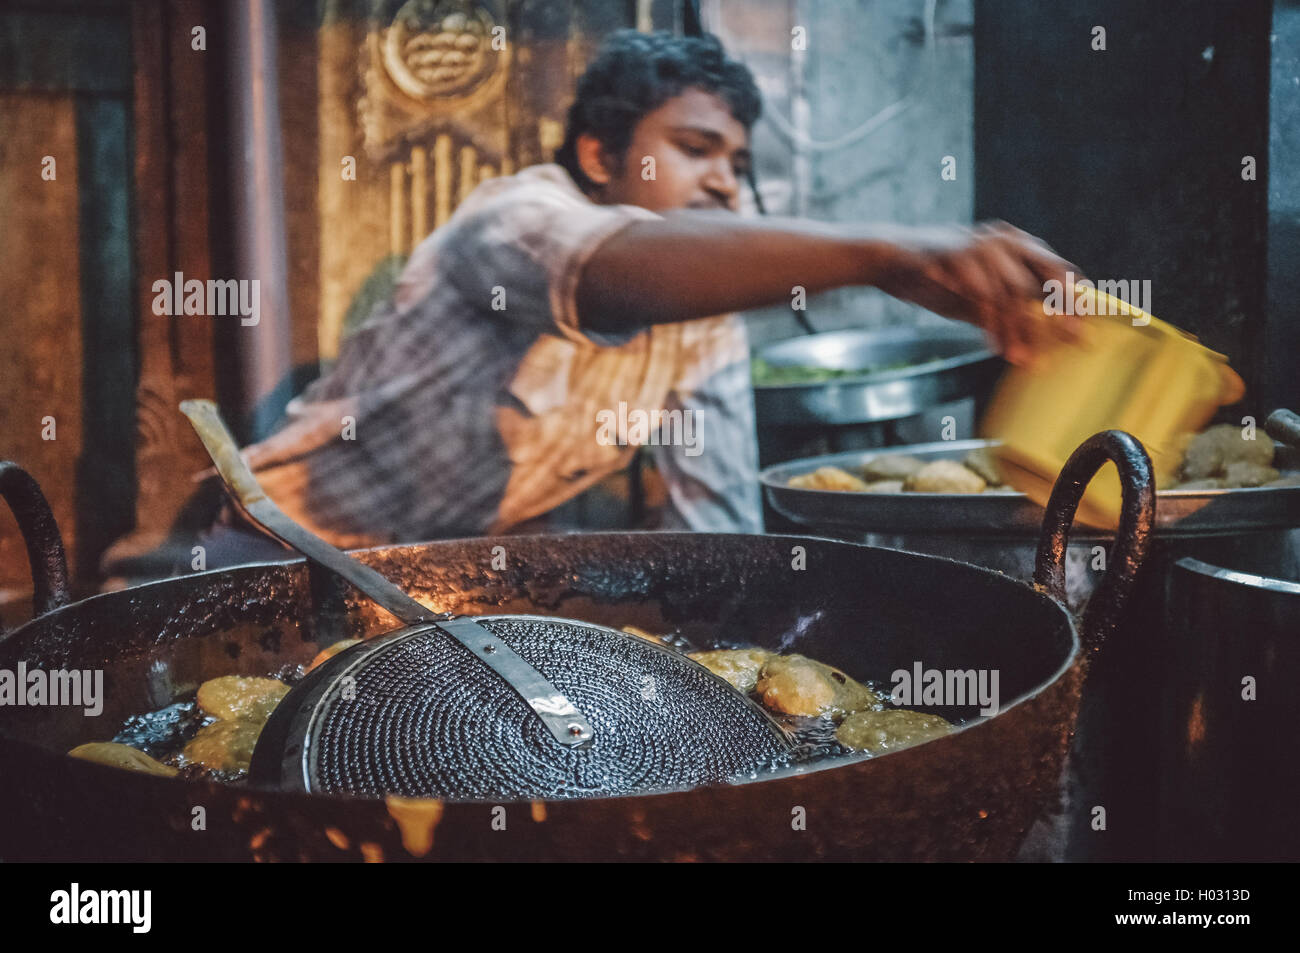 JODHPUR, INDE - 07 février 2015 : Jeune Indien vendeur de rue, de pommes de terre frites coupées en morceaux dans grande poêle. Motion Blur. Poster Banque D'Images